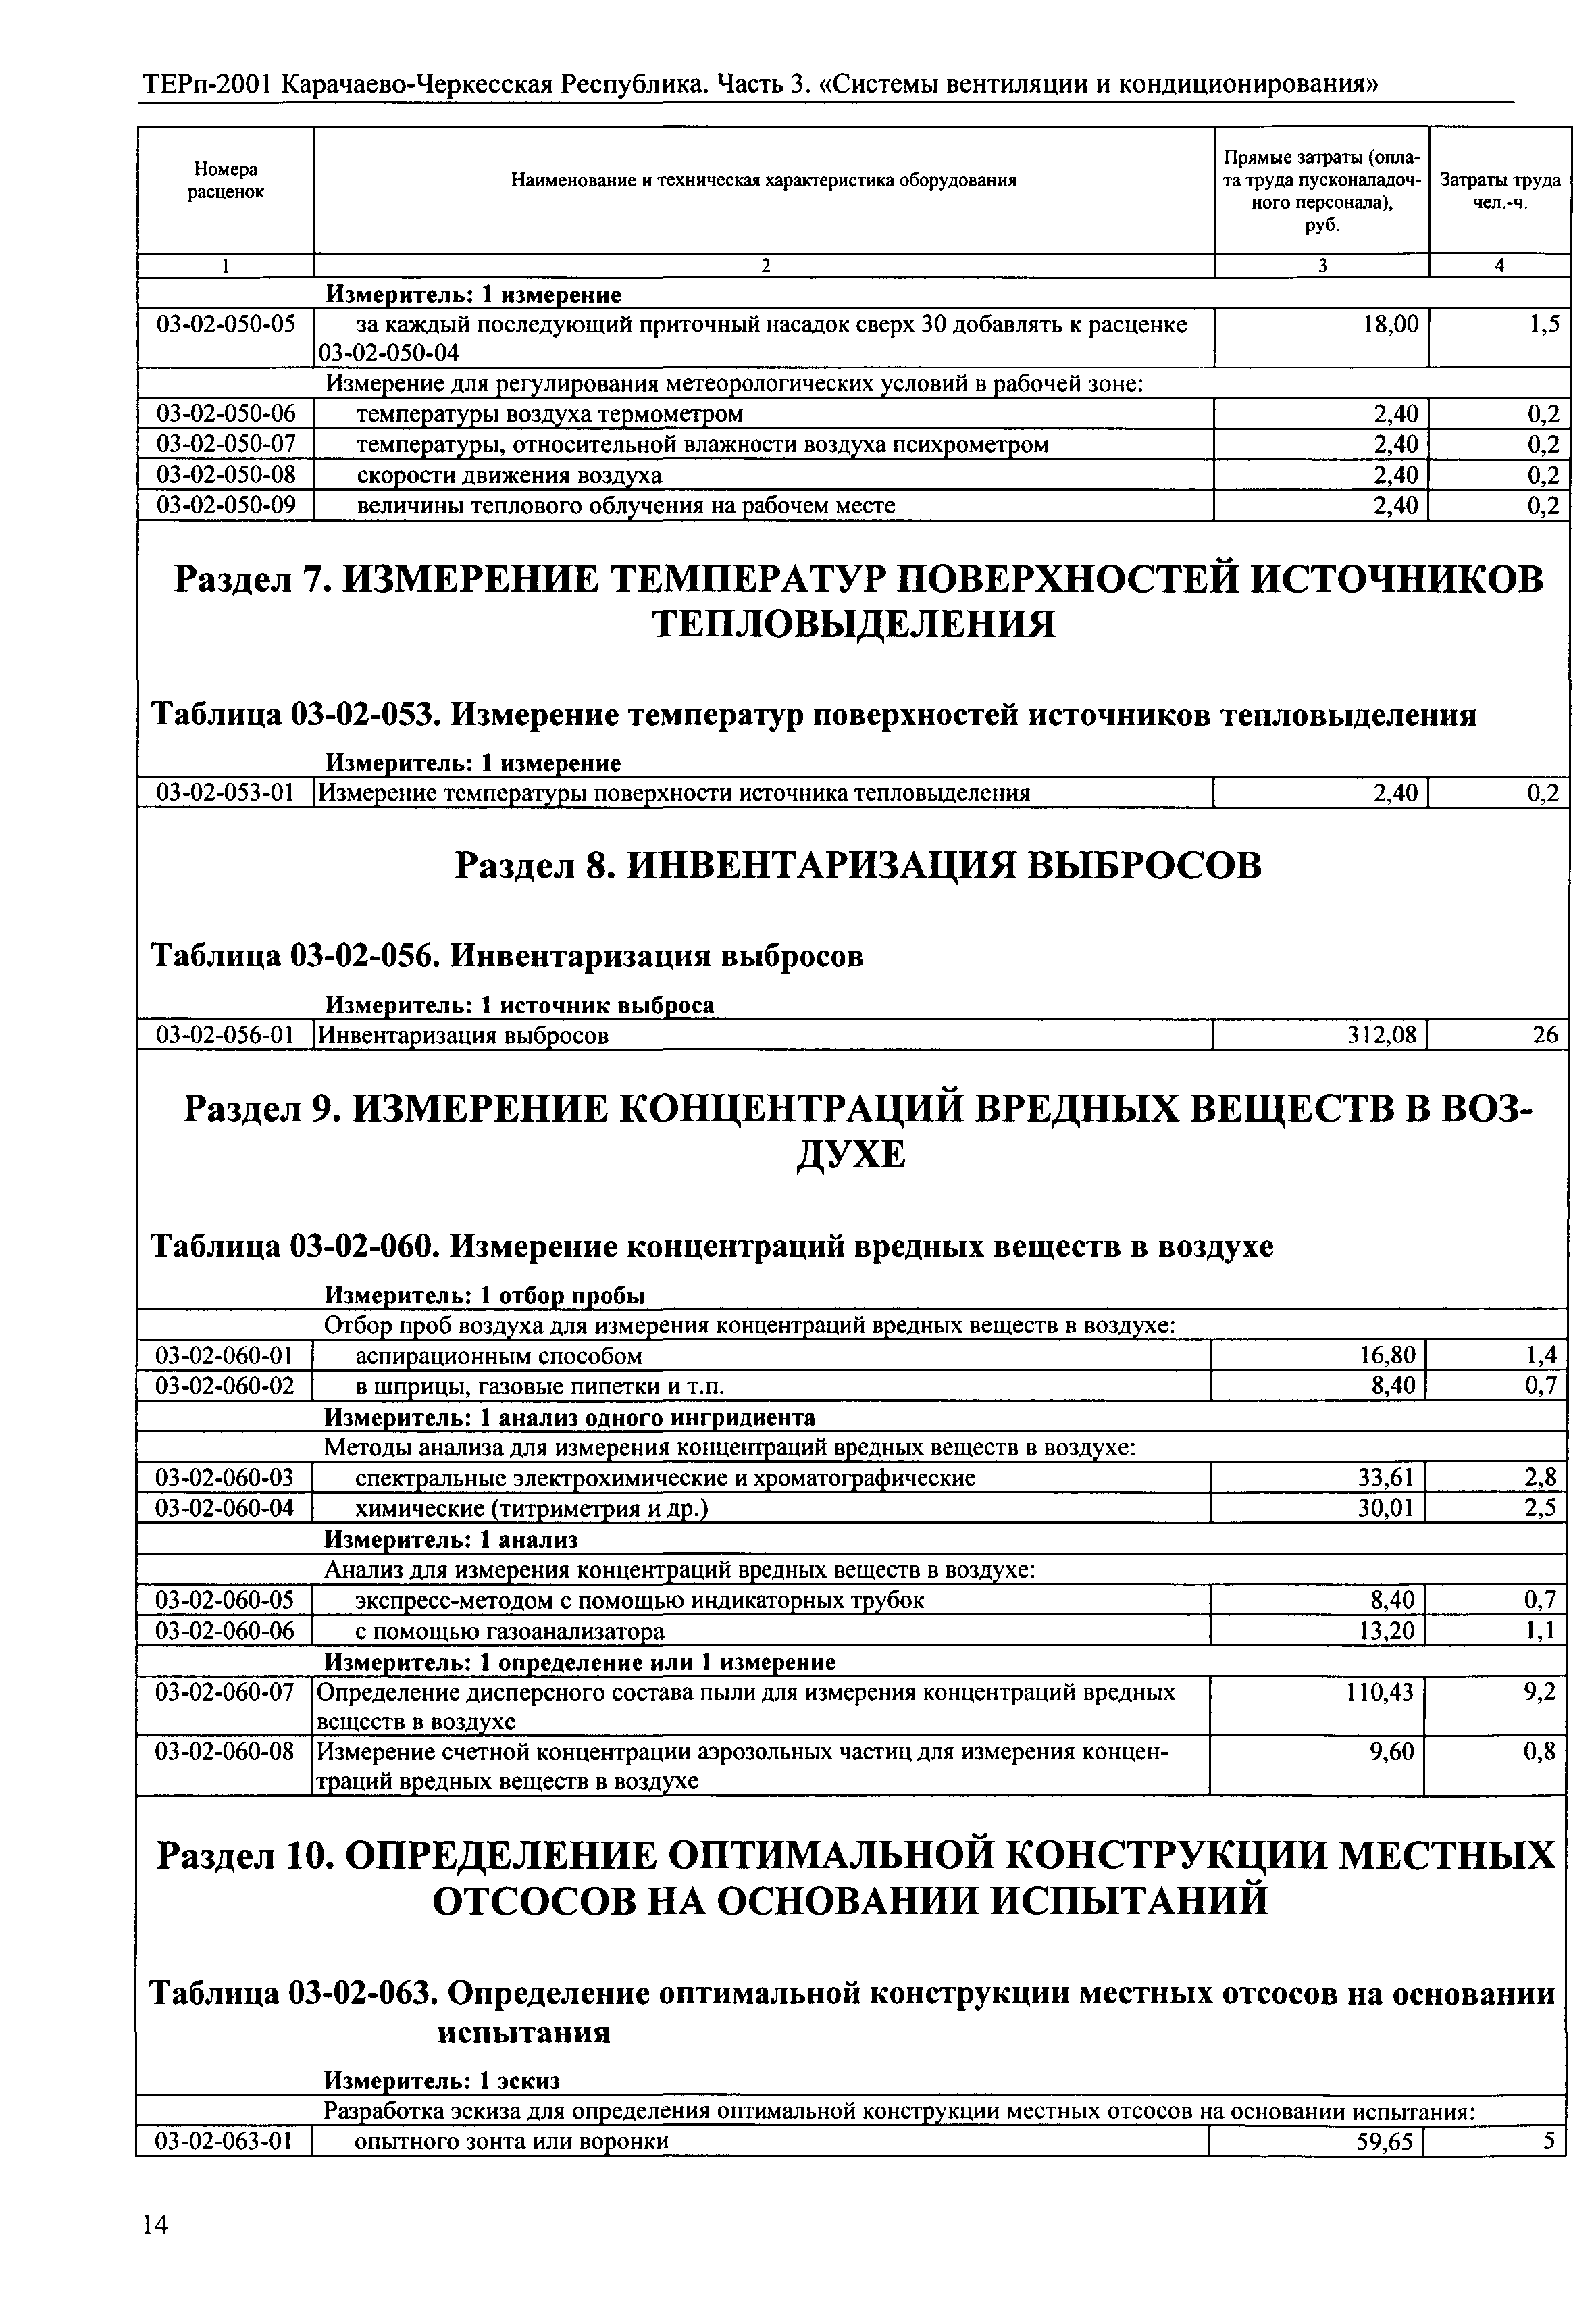 ТЕРп Карачаево-Черкесская Республика 03-2001